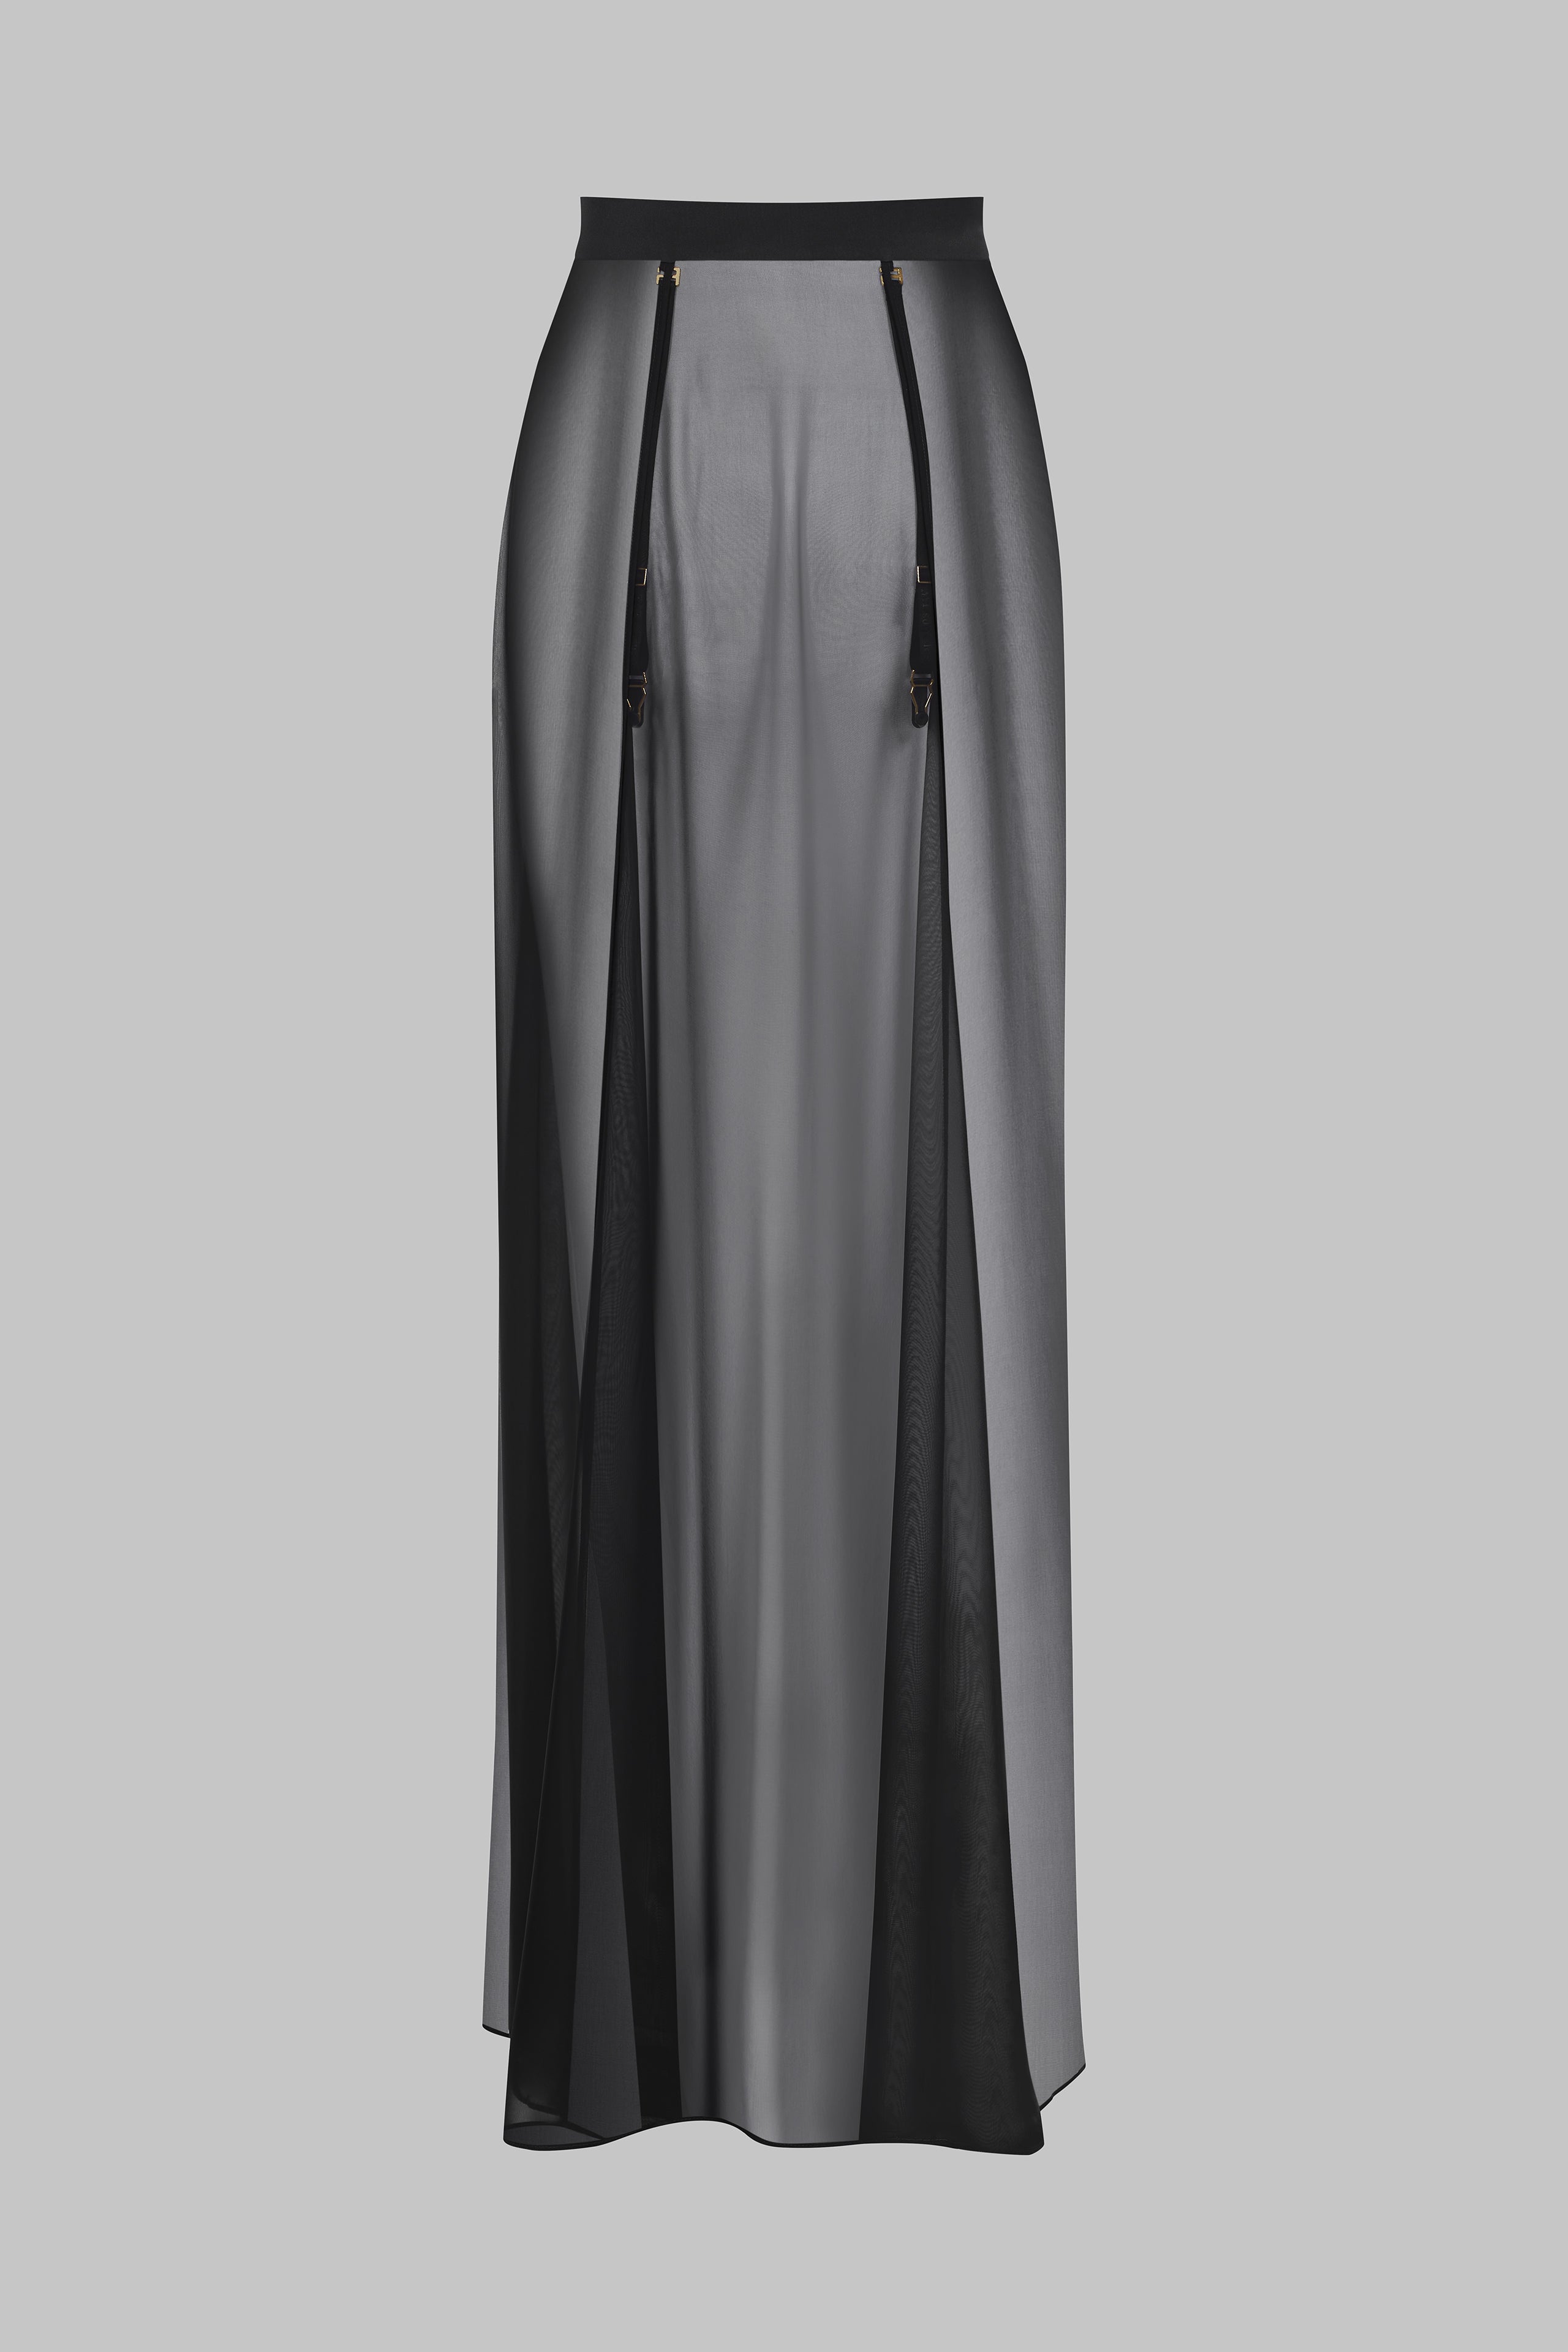 005 - Long muslin wrap skirt